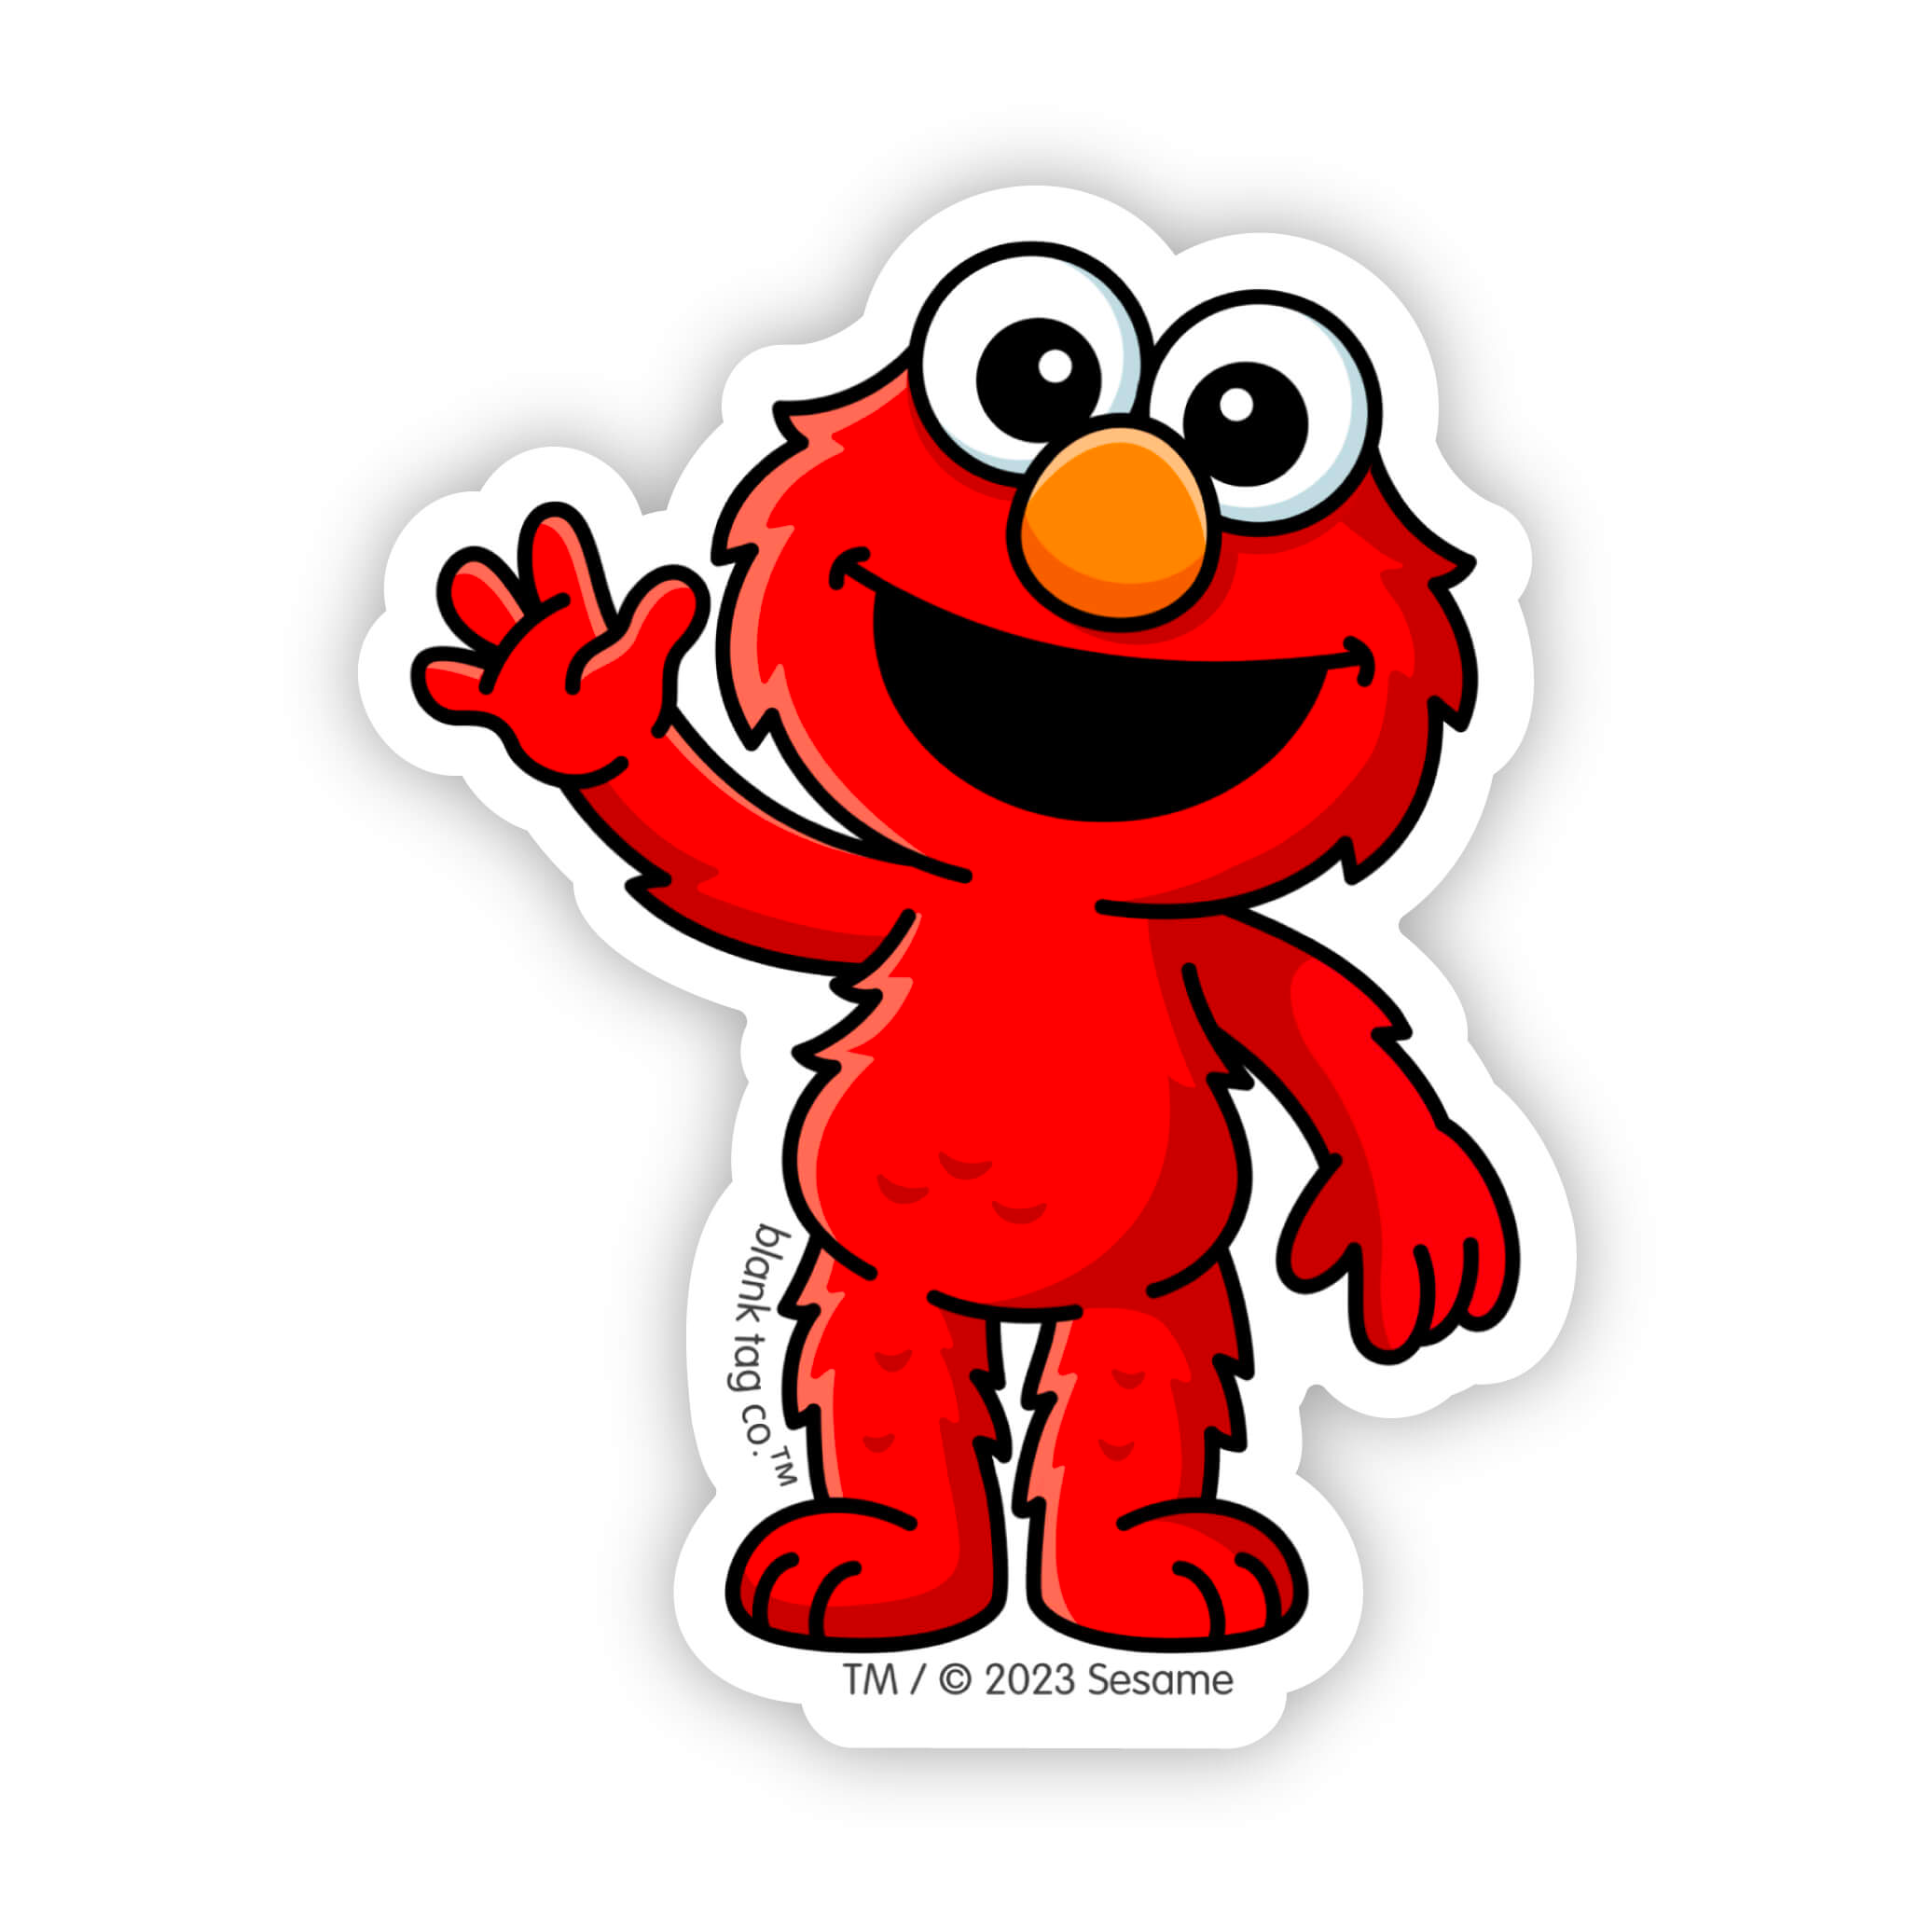 The Elmo Sticker